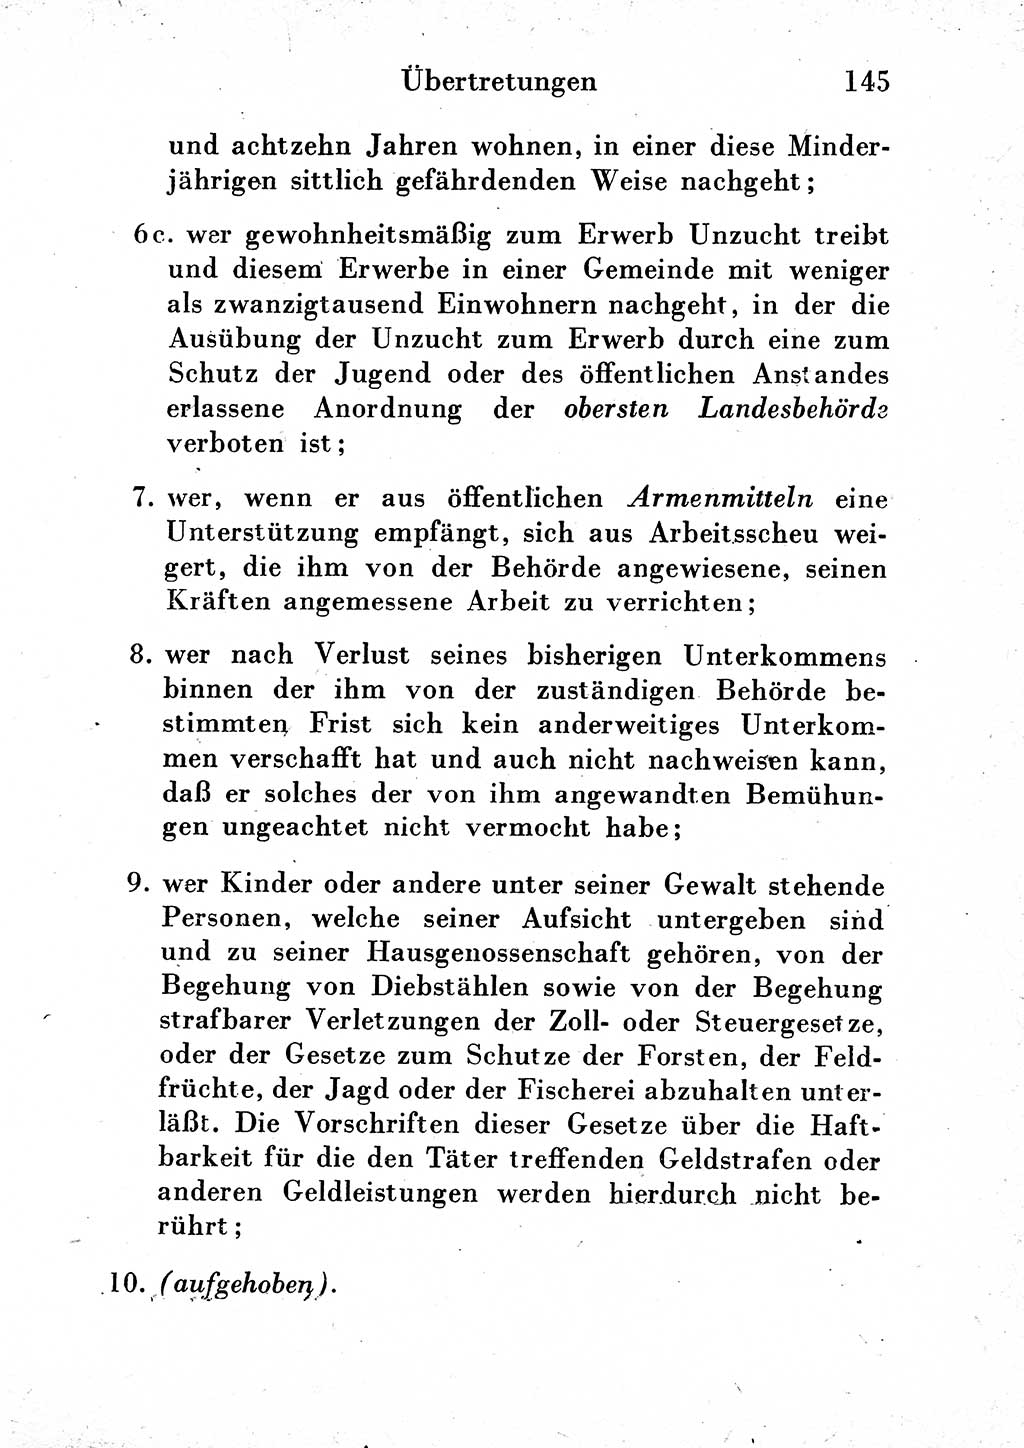 Strafgesetzbuch (StGB) und andere Strafgesetze [Deutsche Demokratische Republik (DDR)] 1954, Seite 145 (StGB Strafges. DDR 1954, S. 145)